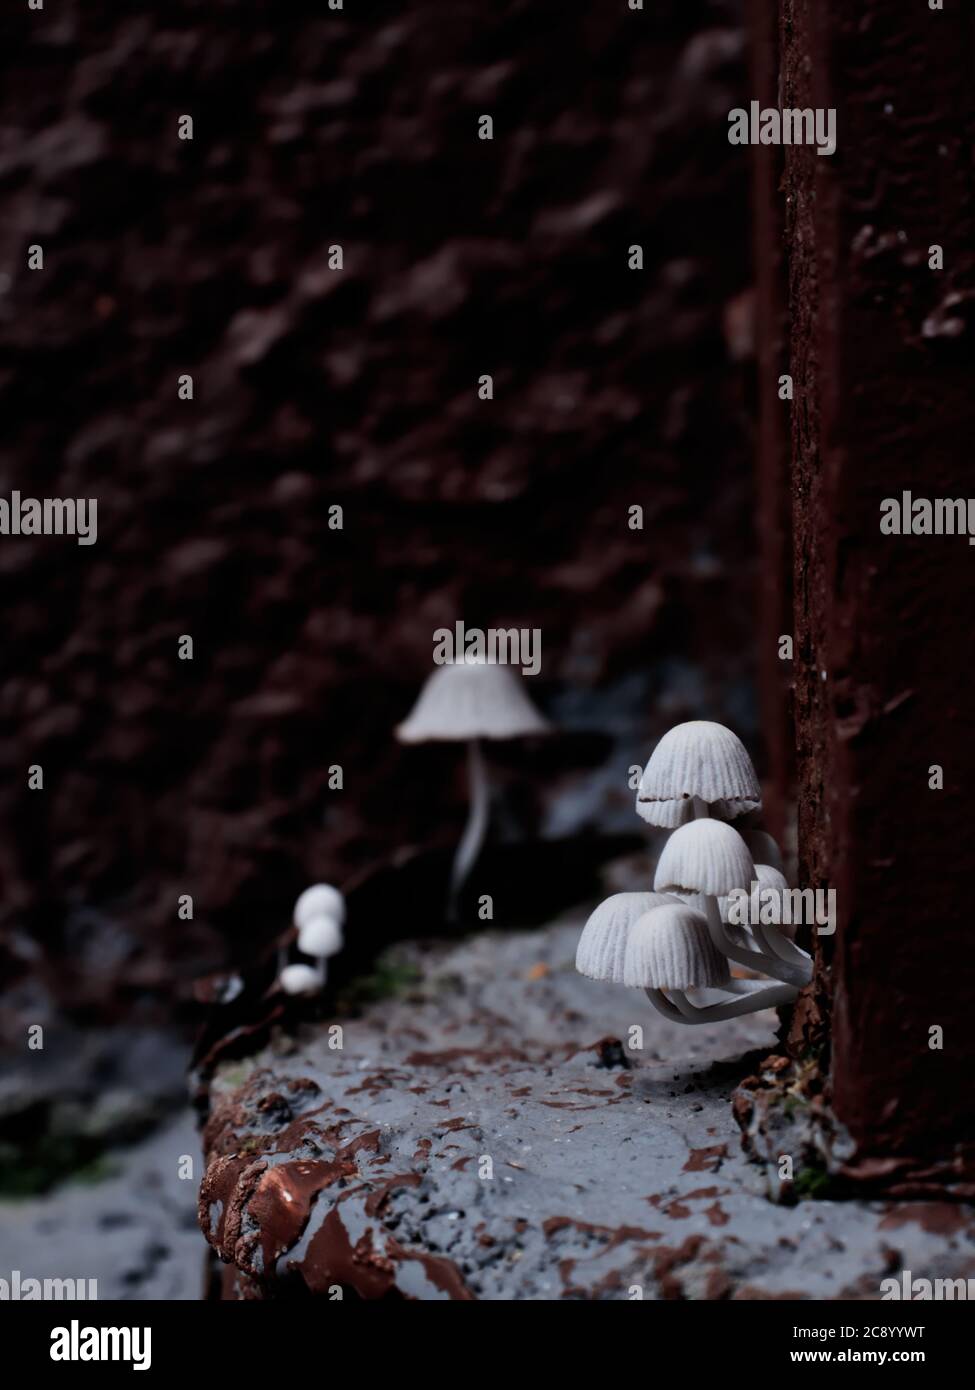 Small white wild mushrooms blooming in a dark corner. Stock Photo